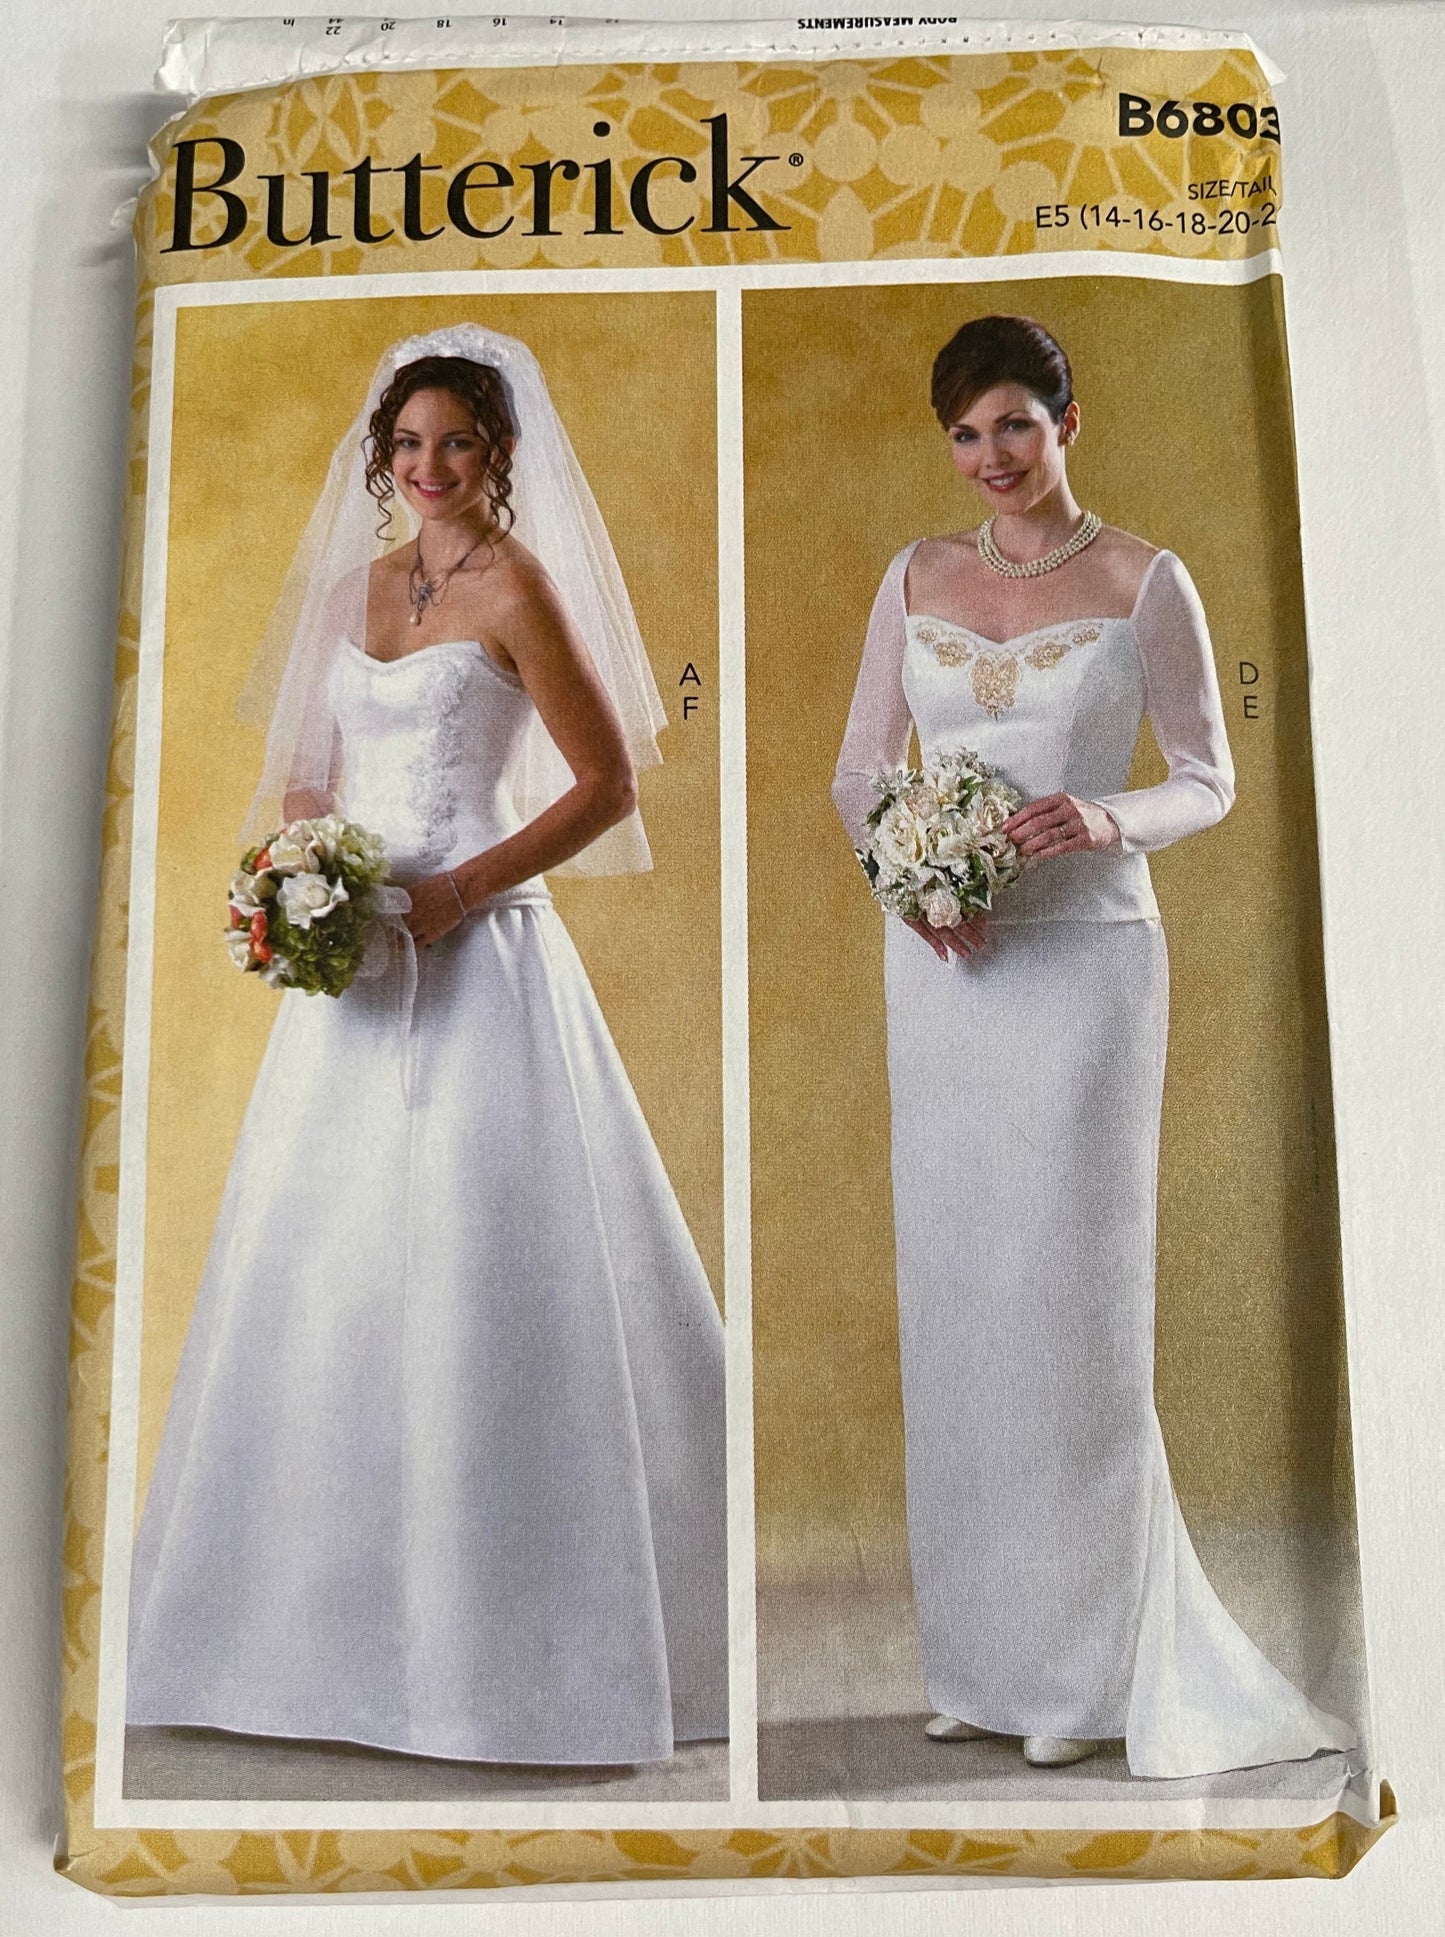 Butterick Pattern #B6803 Wedding Dress Size (14-16-18-20-22)